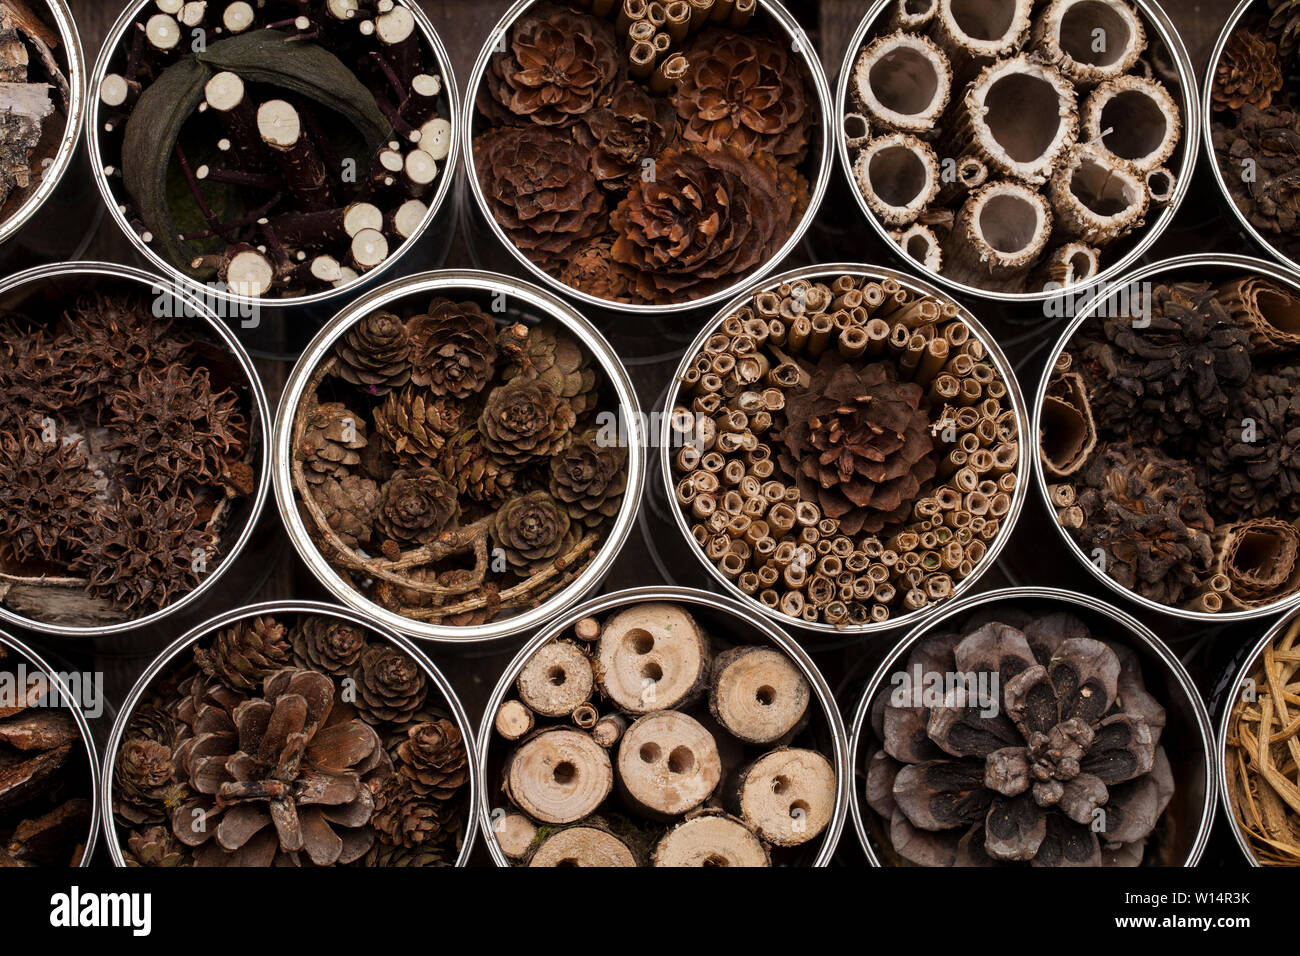 Insekt Haus - Hotel, aus Dosen von Kaffee und verschiedenen Holz- und Pflanzen Teile Stockfoto